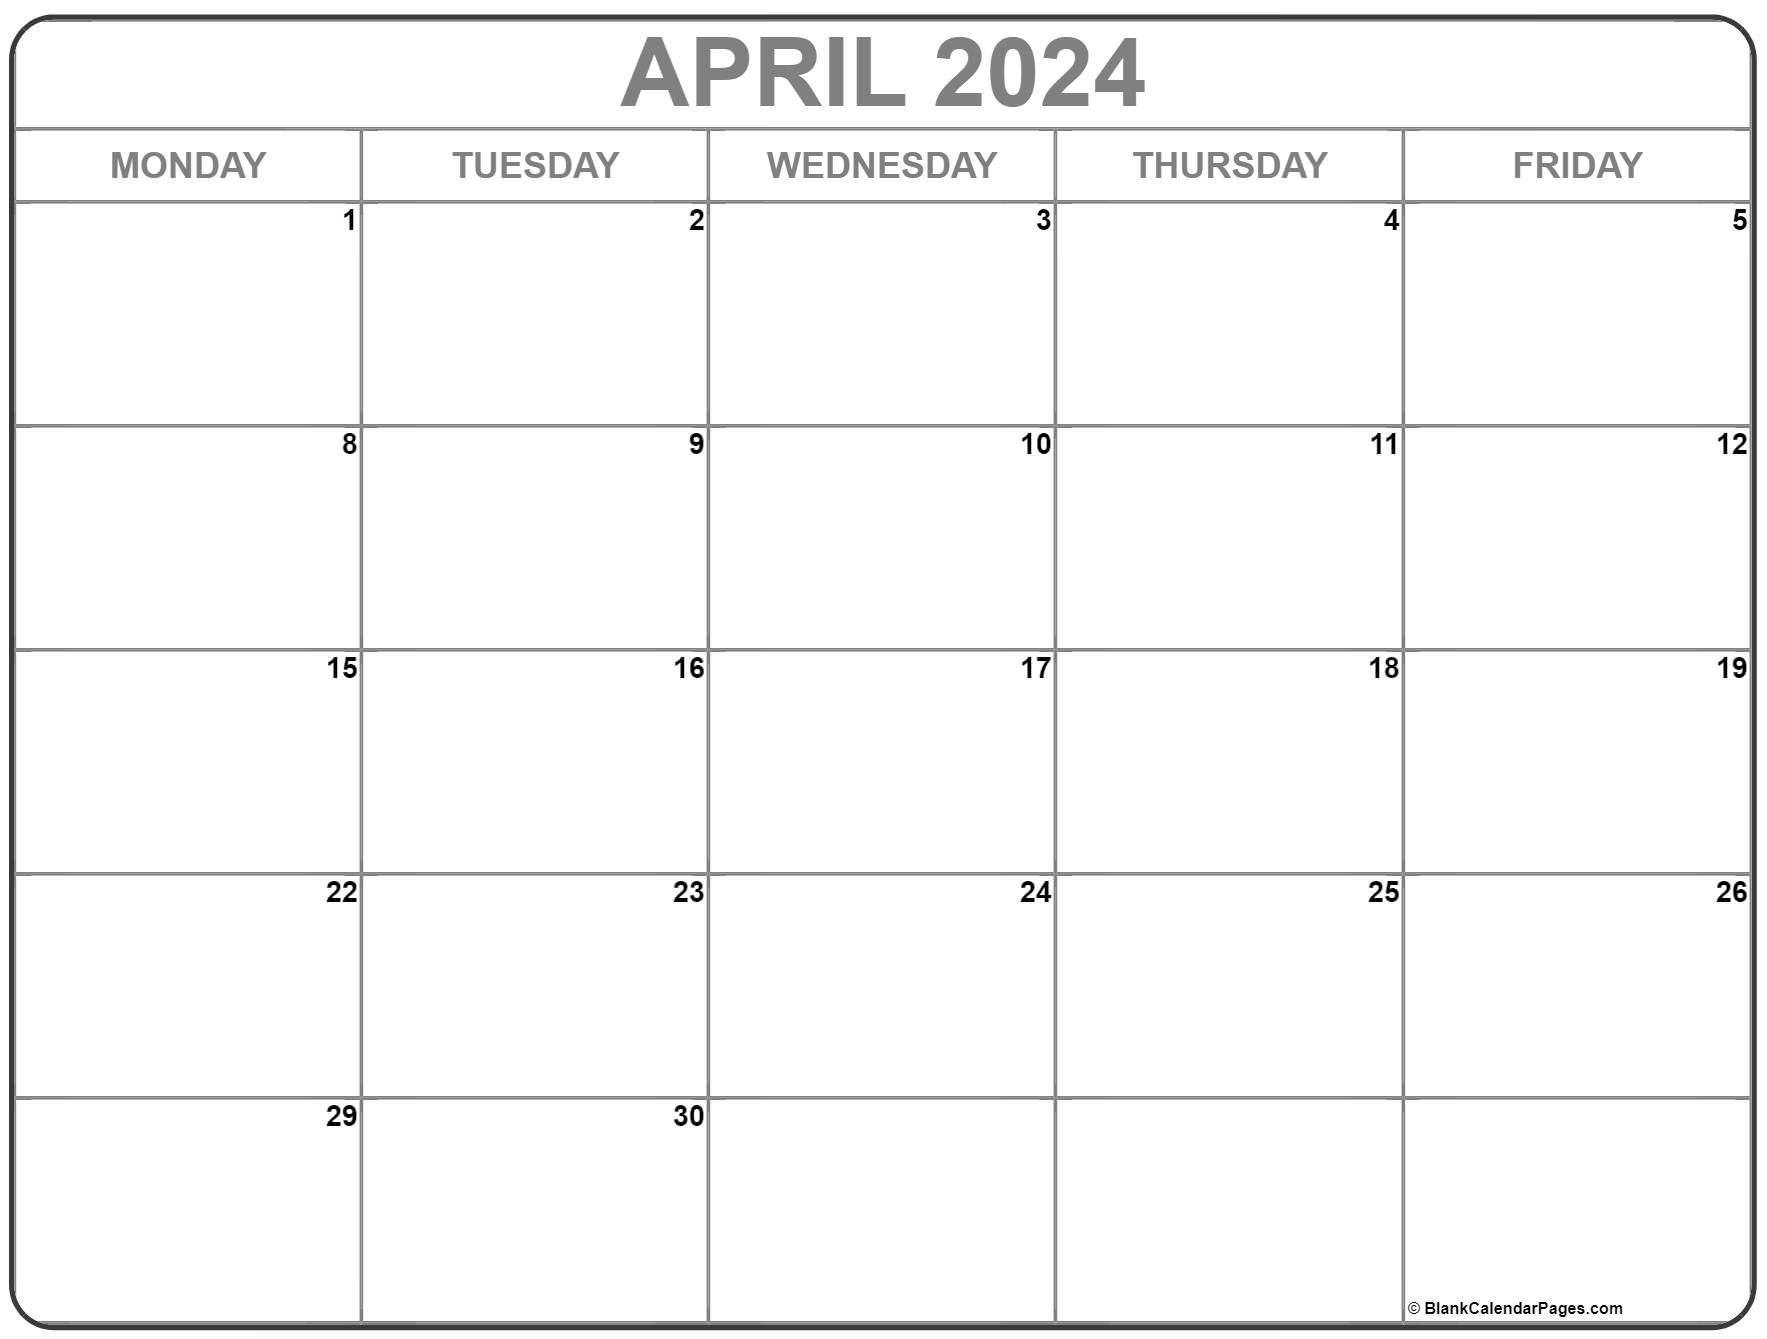 April Monday 2023 Blank Calendar Calendar Quickly